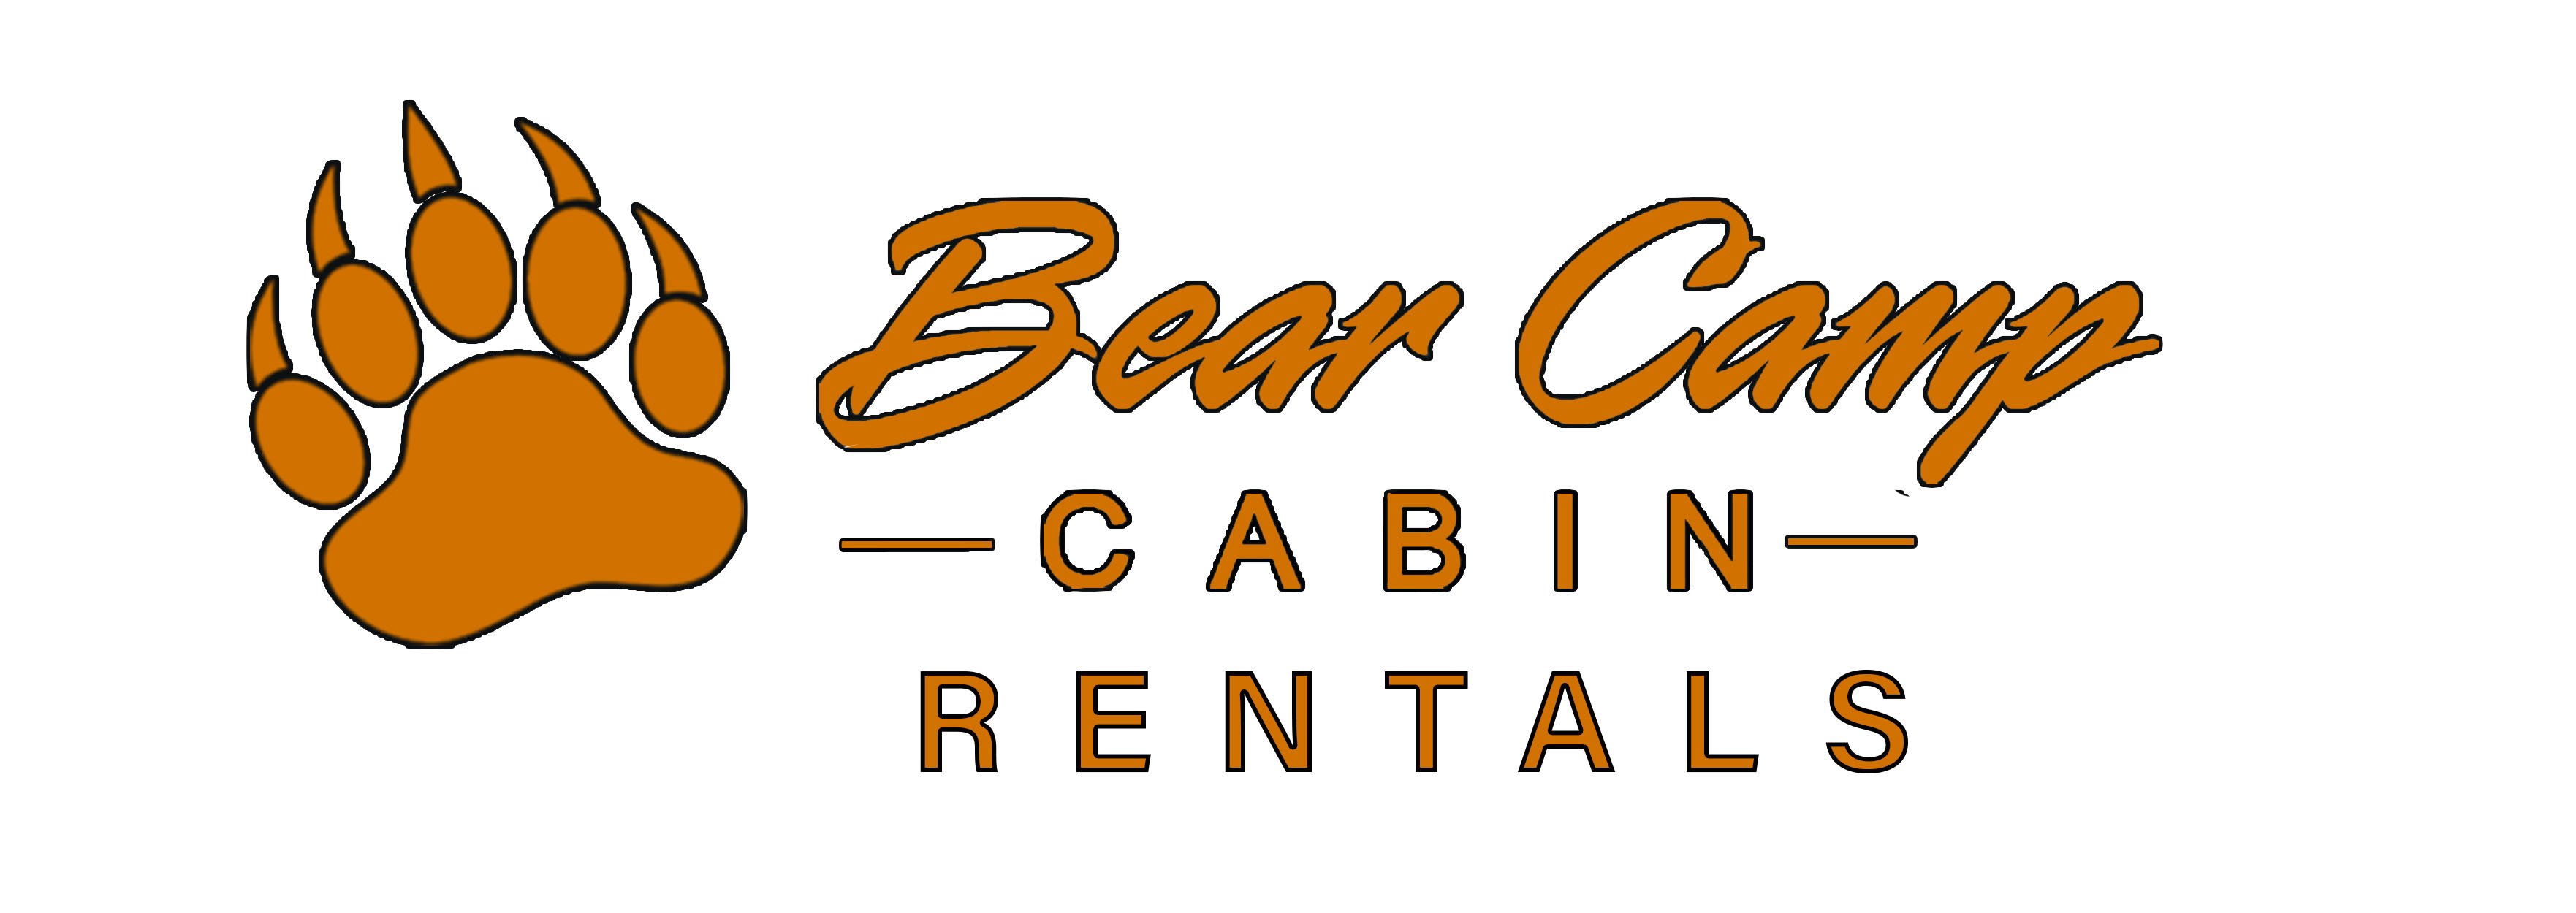 Bear Camp Cabin Rentals logo